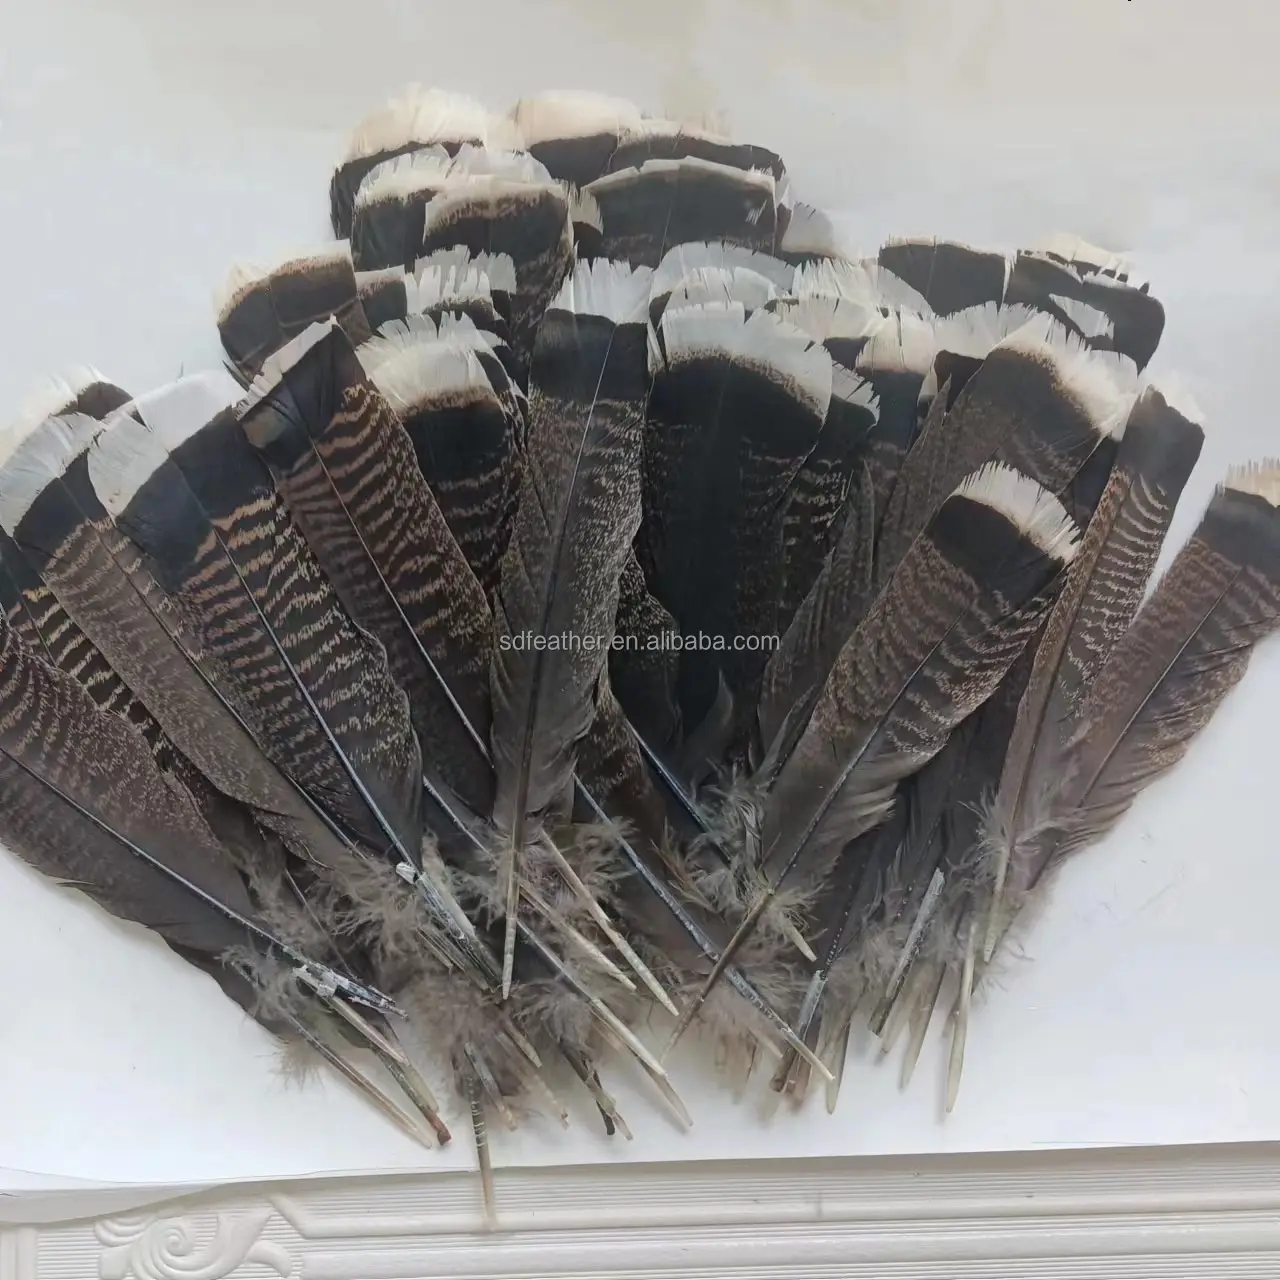 25-30ซม. 10-12นิ้วงานฝีมือขนนกไก่งวงหางสำหรับงานรื่นเริงหน้ากากผ้าโพกศีรษะตกแต่งเต้นรำ